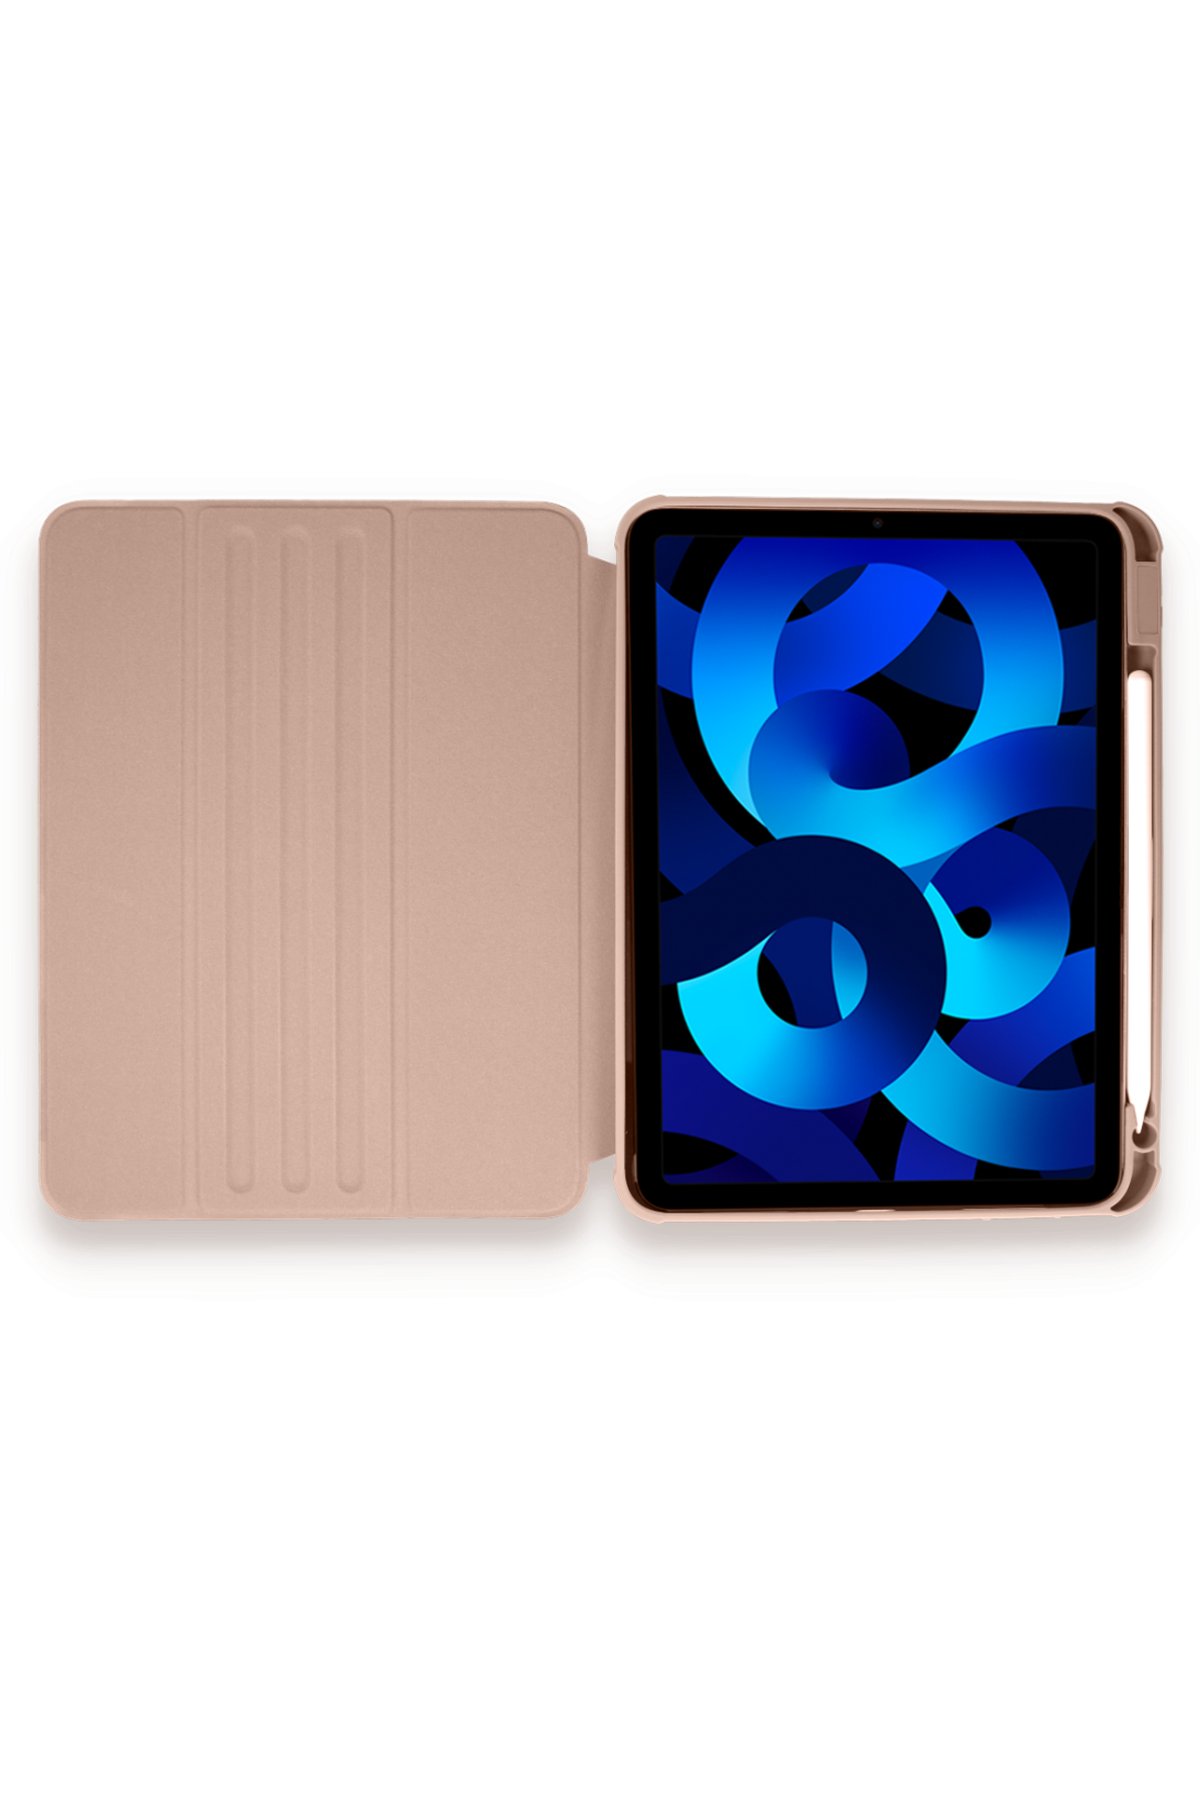 Newface iPad Pro 12.9 (2020) Kılıf Tablet Focus Silikon - Lacivert